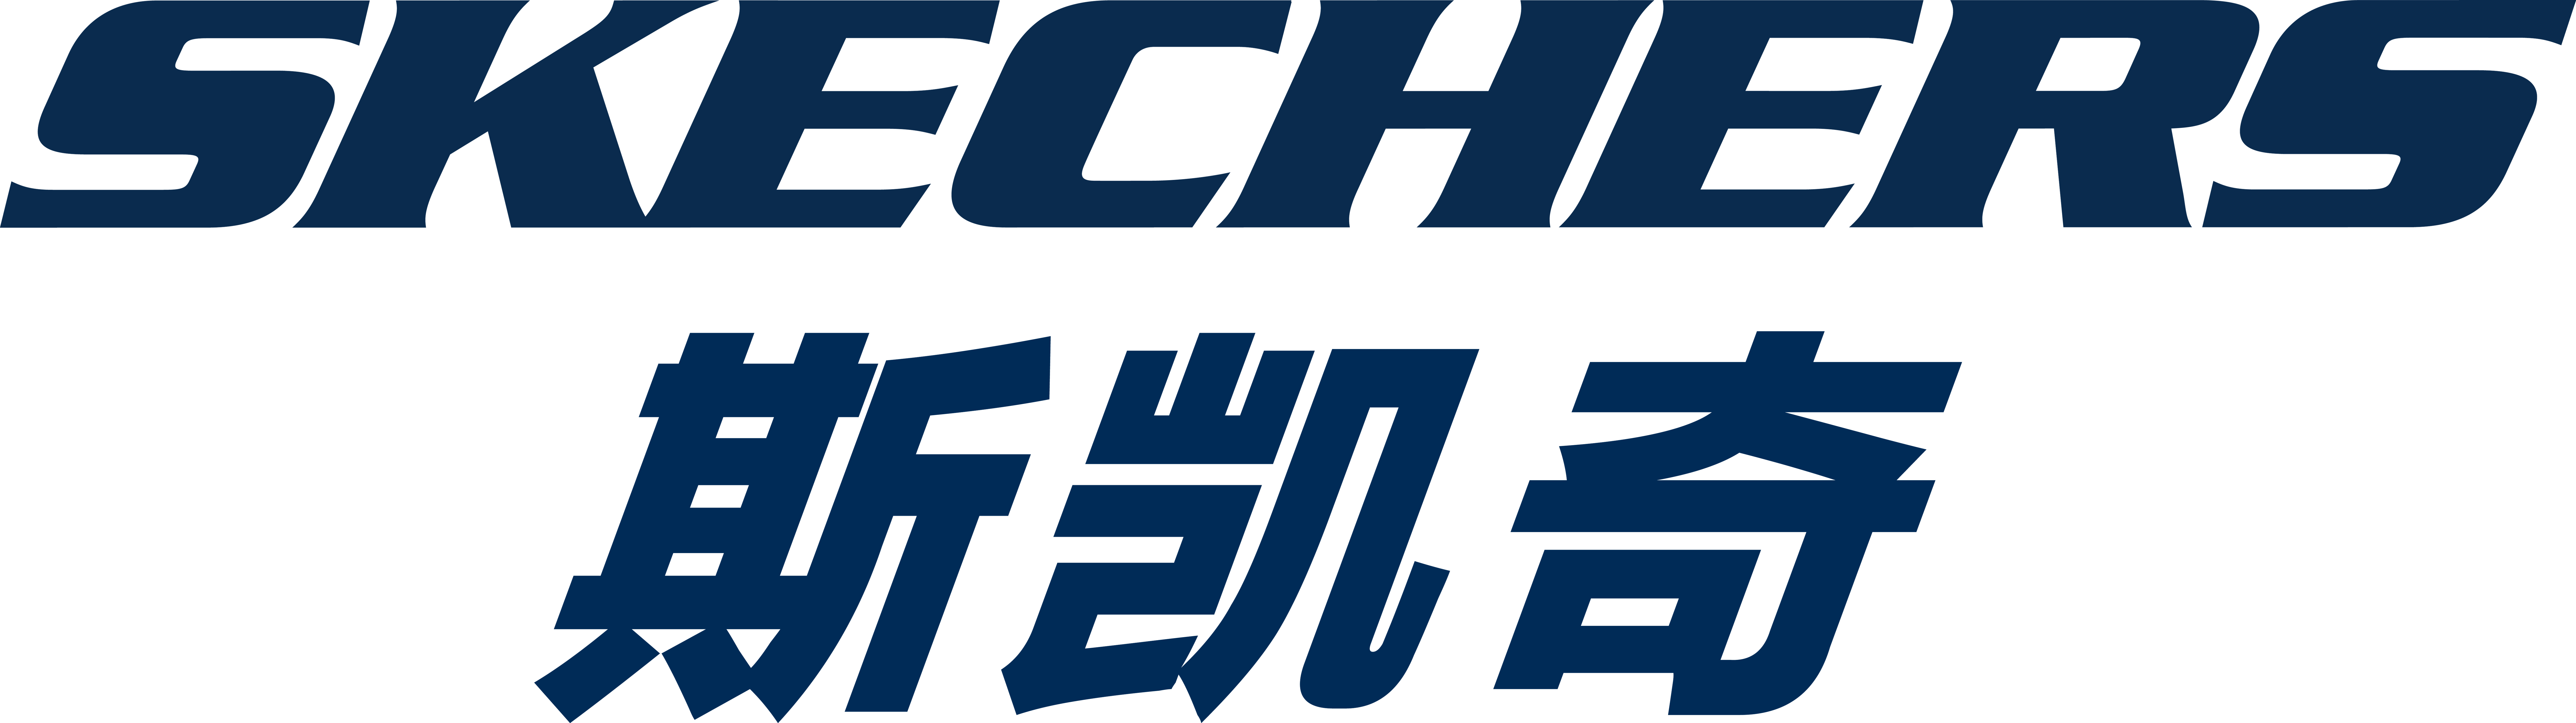 斯凯奇logo设计理念图片